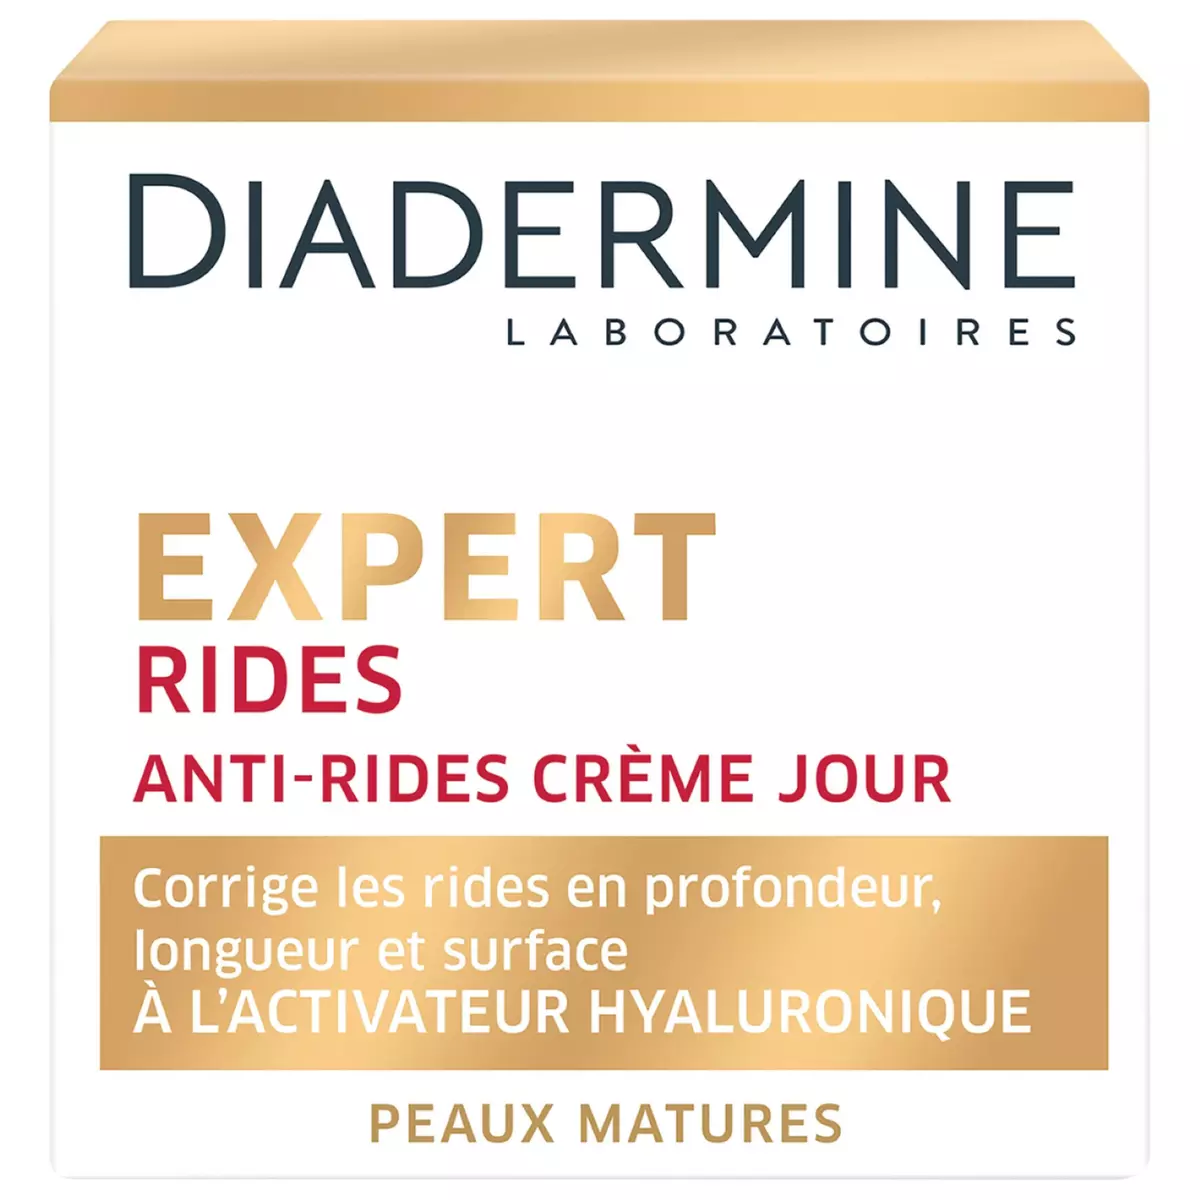 Diadermine - Lift+ Lissage Immédiat - Crème de Jour Visage - Soin